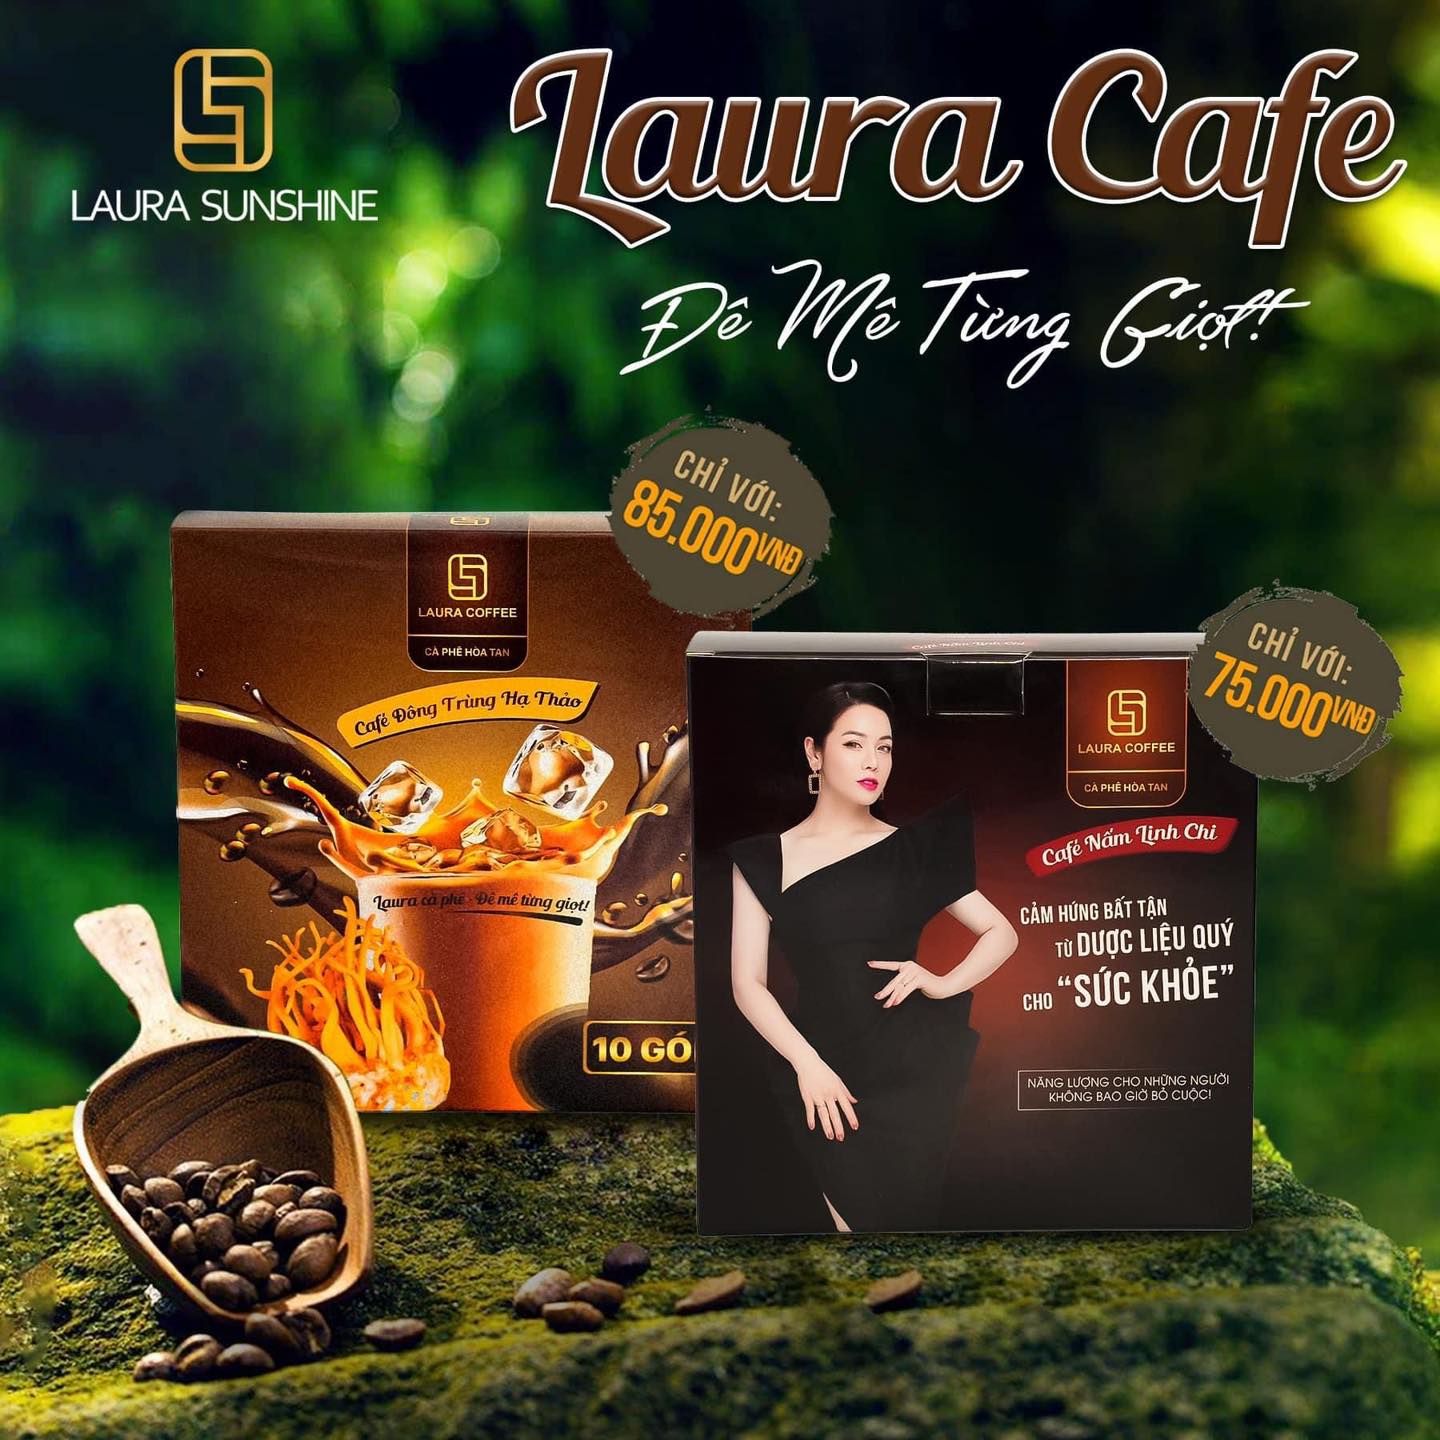 Cà phê hòa tan cao cấp Laura Coffee Nhật Kim Anh hộp 10 gói